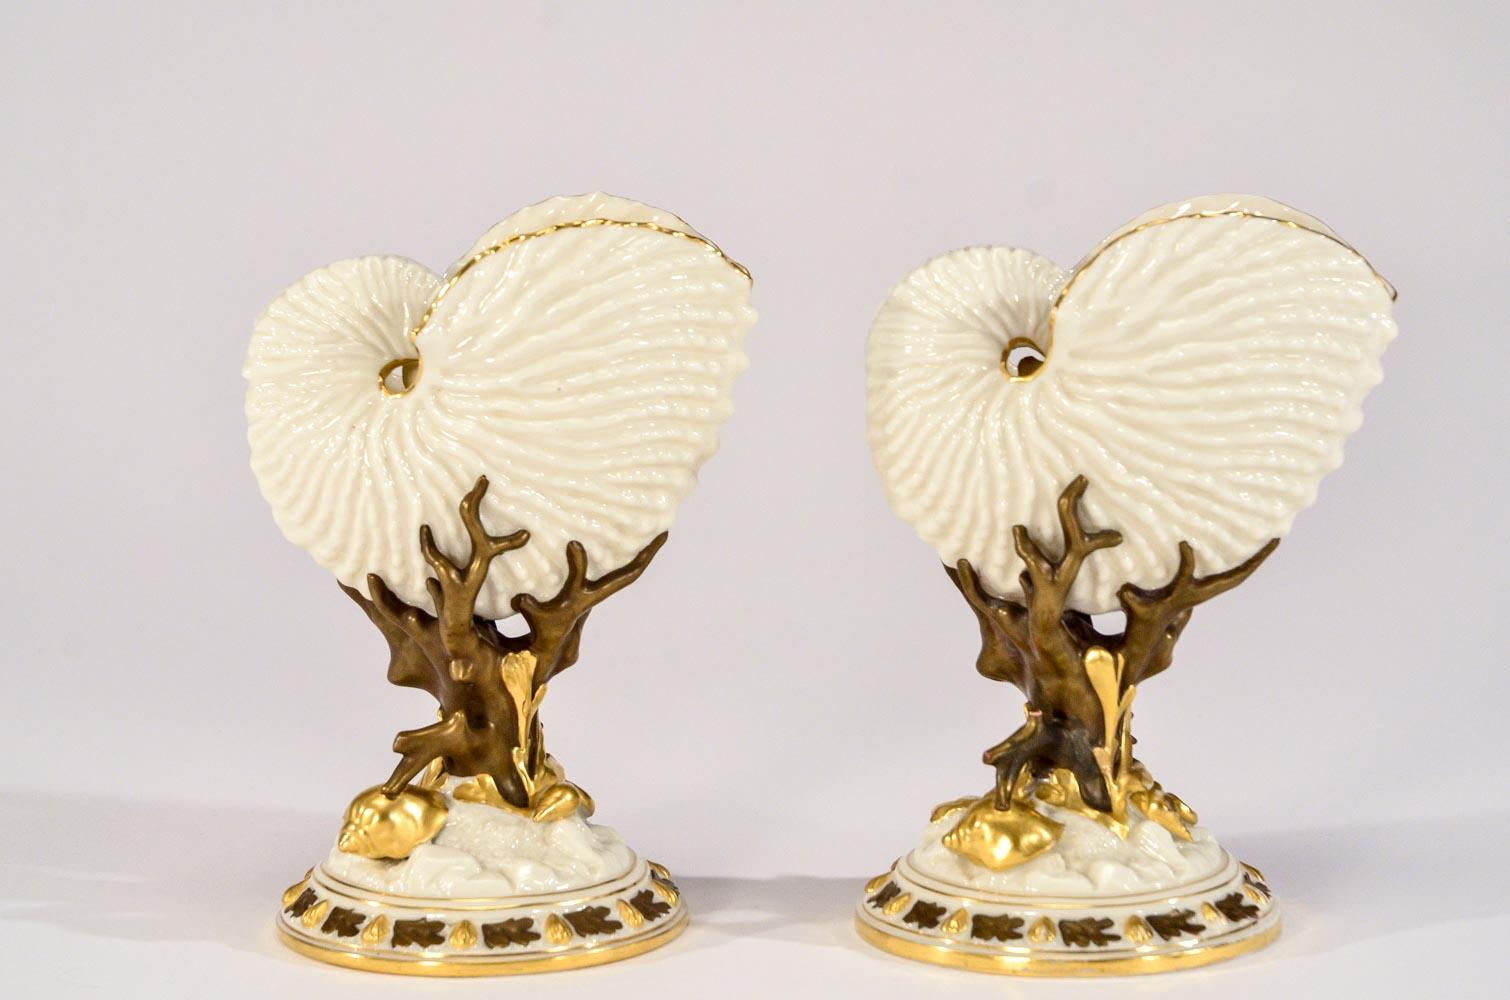 Ces rares exemples de vases à thème en porcelaine ivoire du Mouvement esthétique présentent une paire assortie de coquillages ouverts moulés de façon réaliste, nichés dans des branches de corail. Les parois translucides laissent passer la lumière